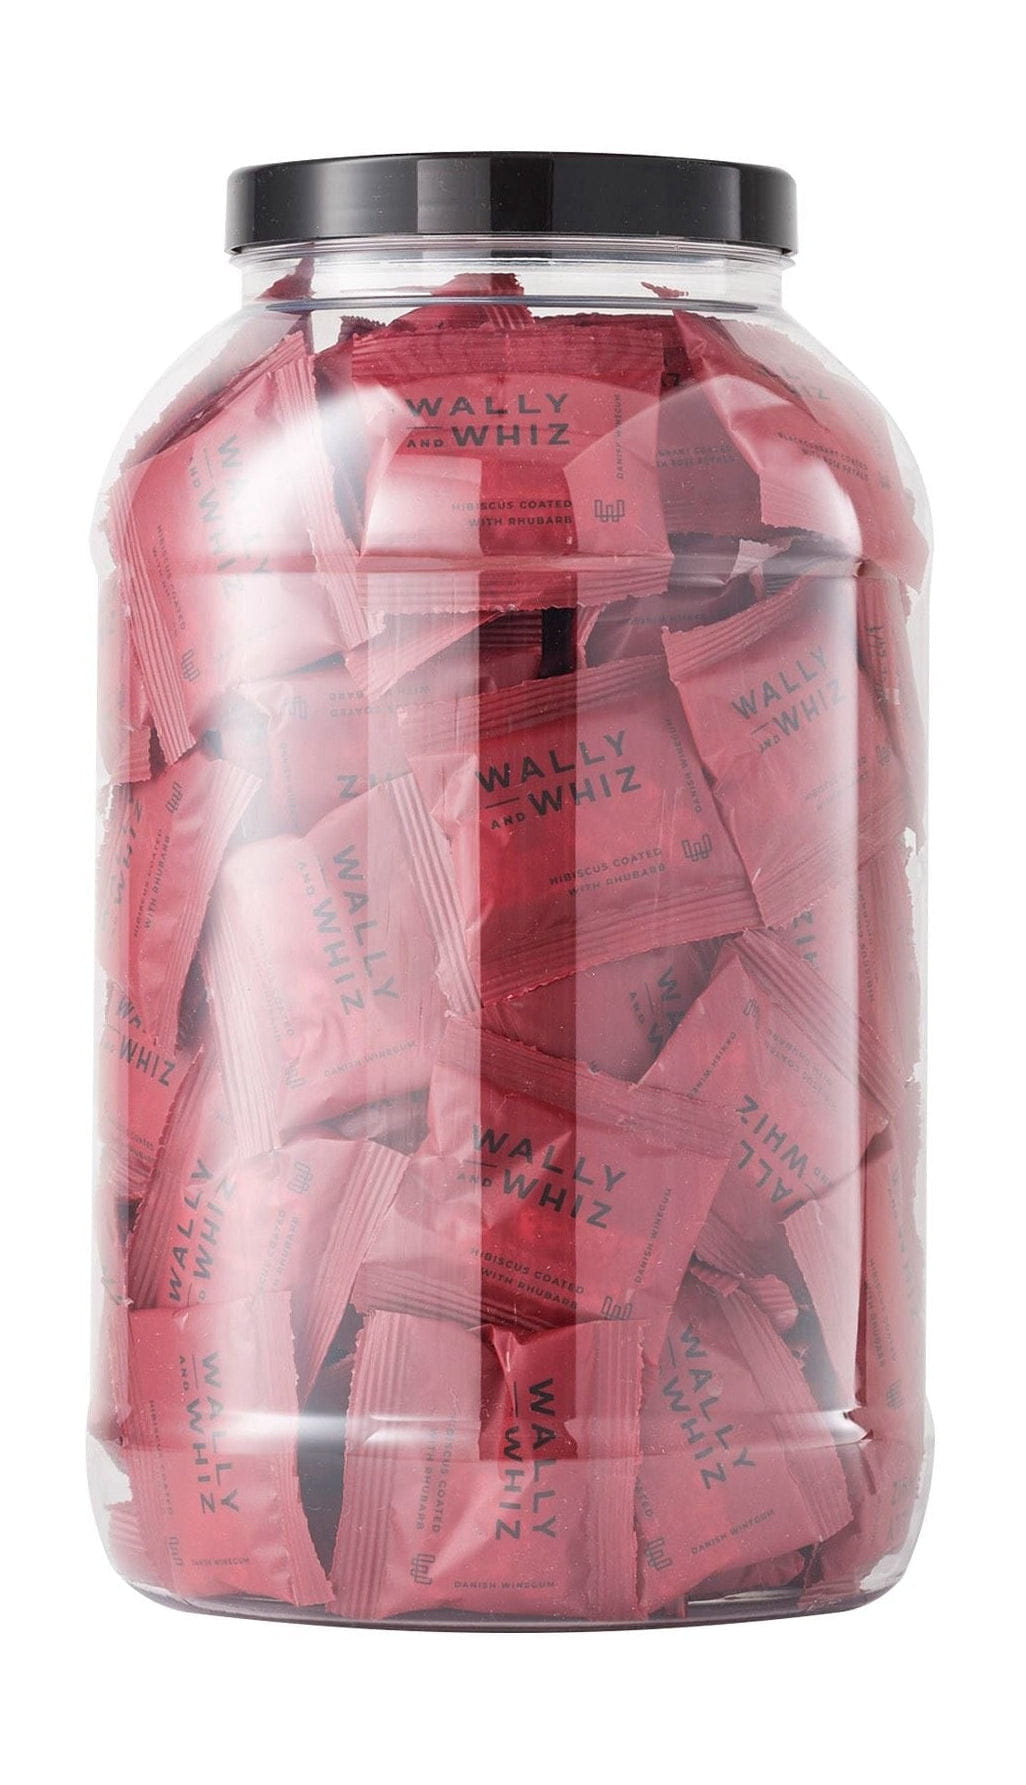 Guma wina Wally i Whiz z 125 przepakami przepływowymi, hibiscus z rabarbkiem